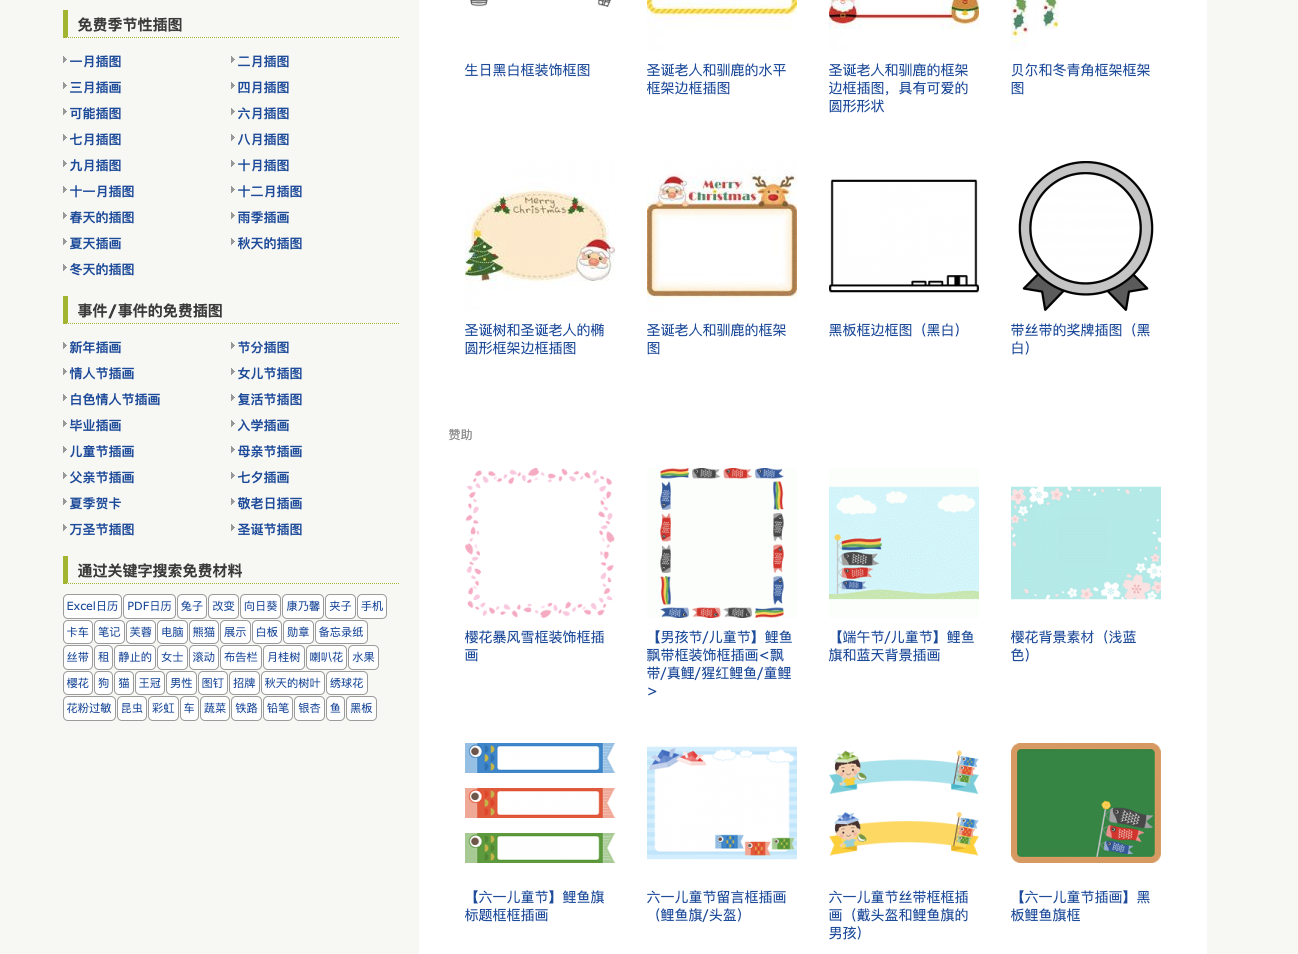 Frameillust | 免费提供可爱日式风格插图素材，支持商业用途下载使用插图1